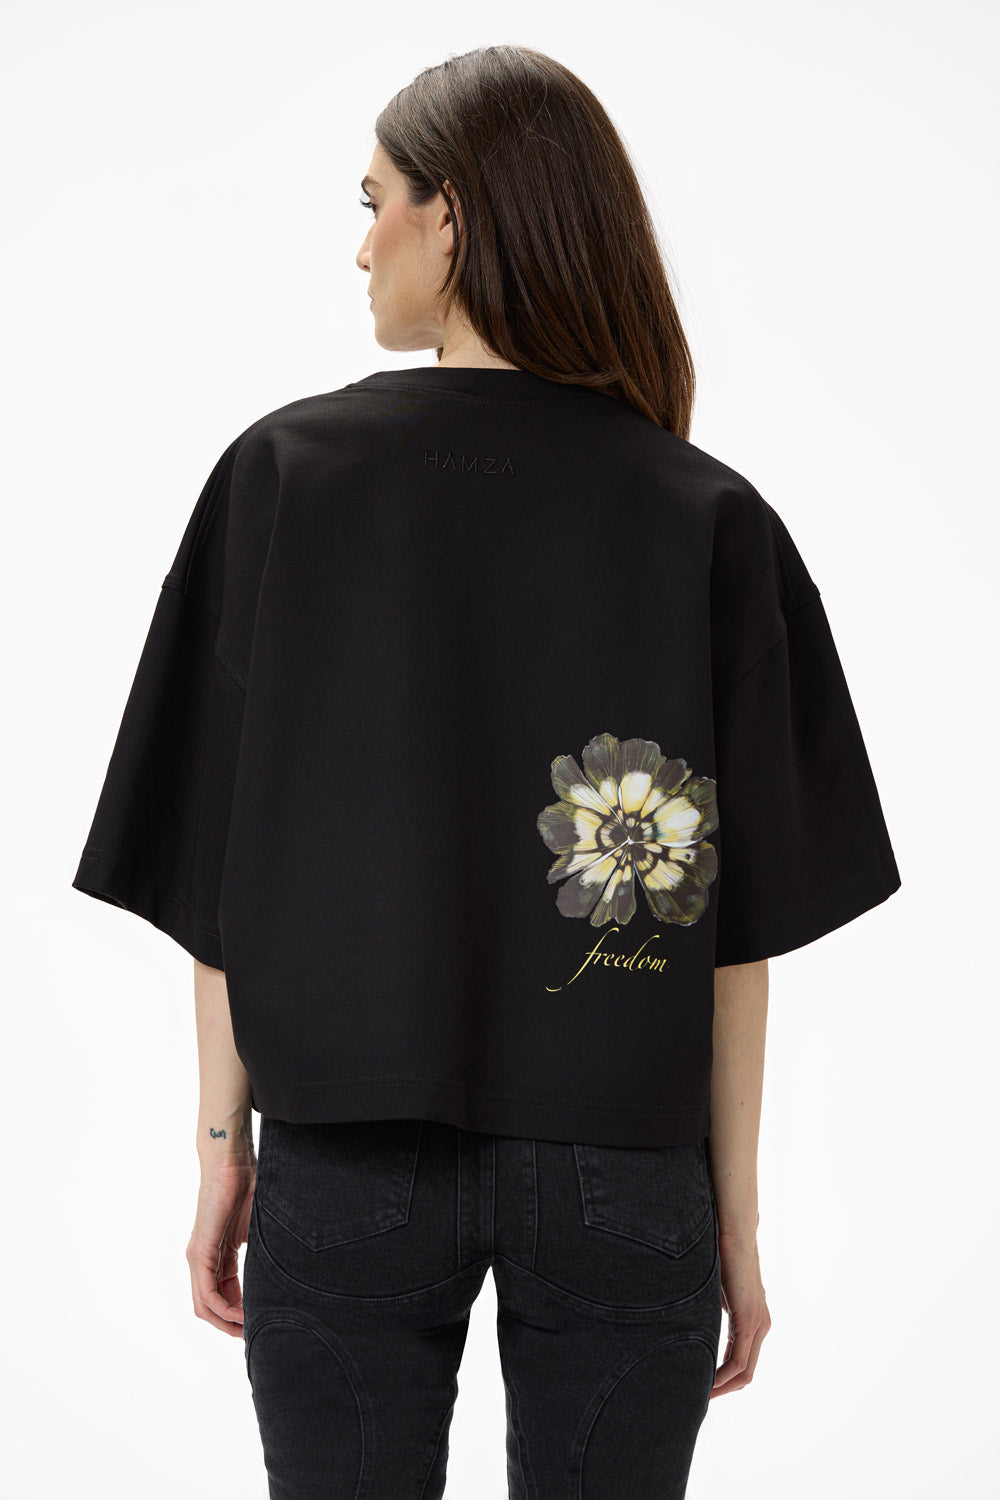 Blossom printed W t-shirt